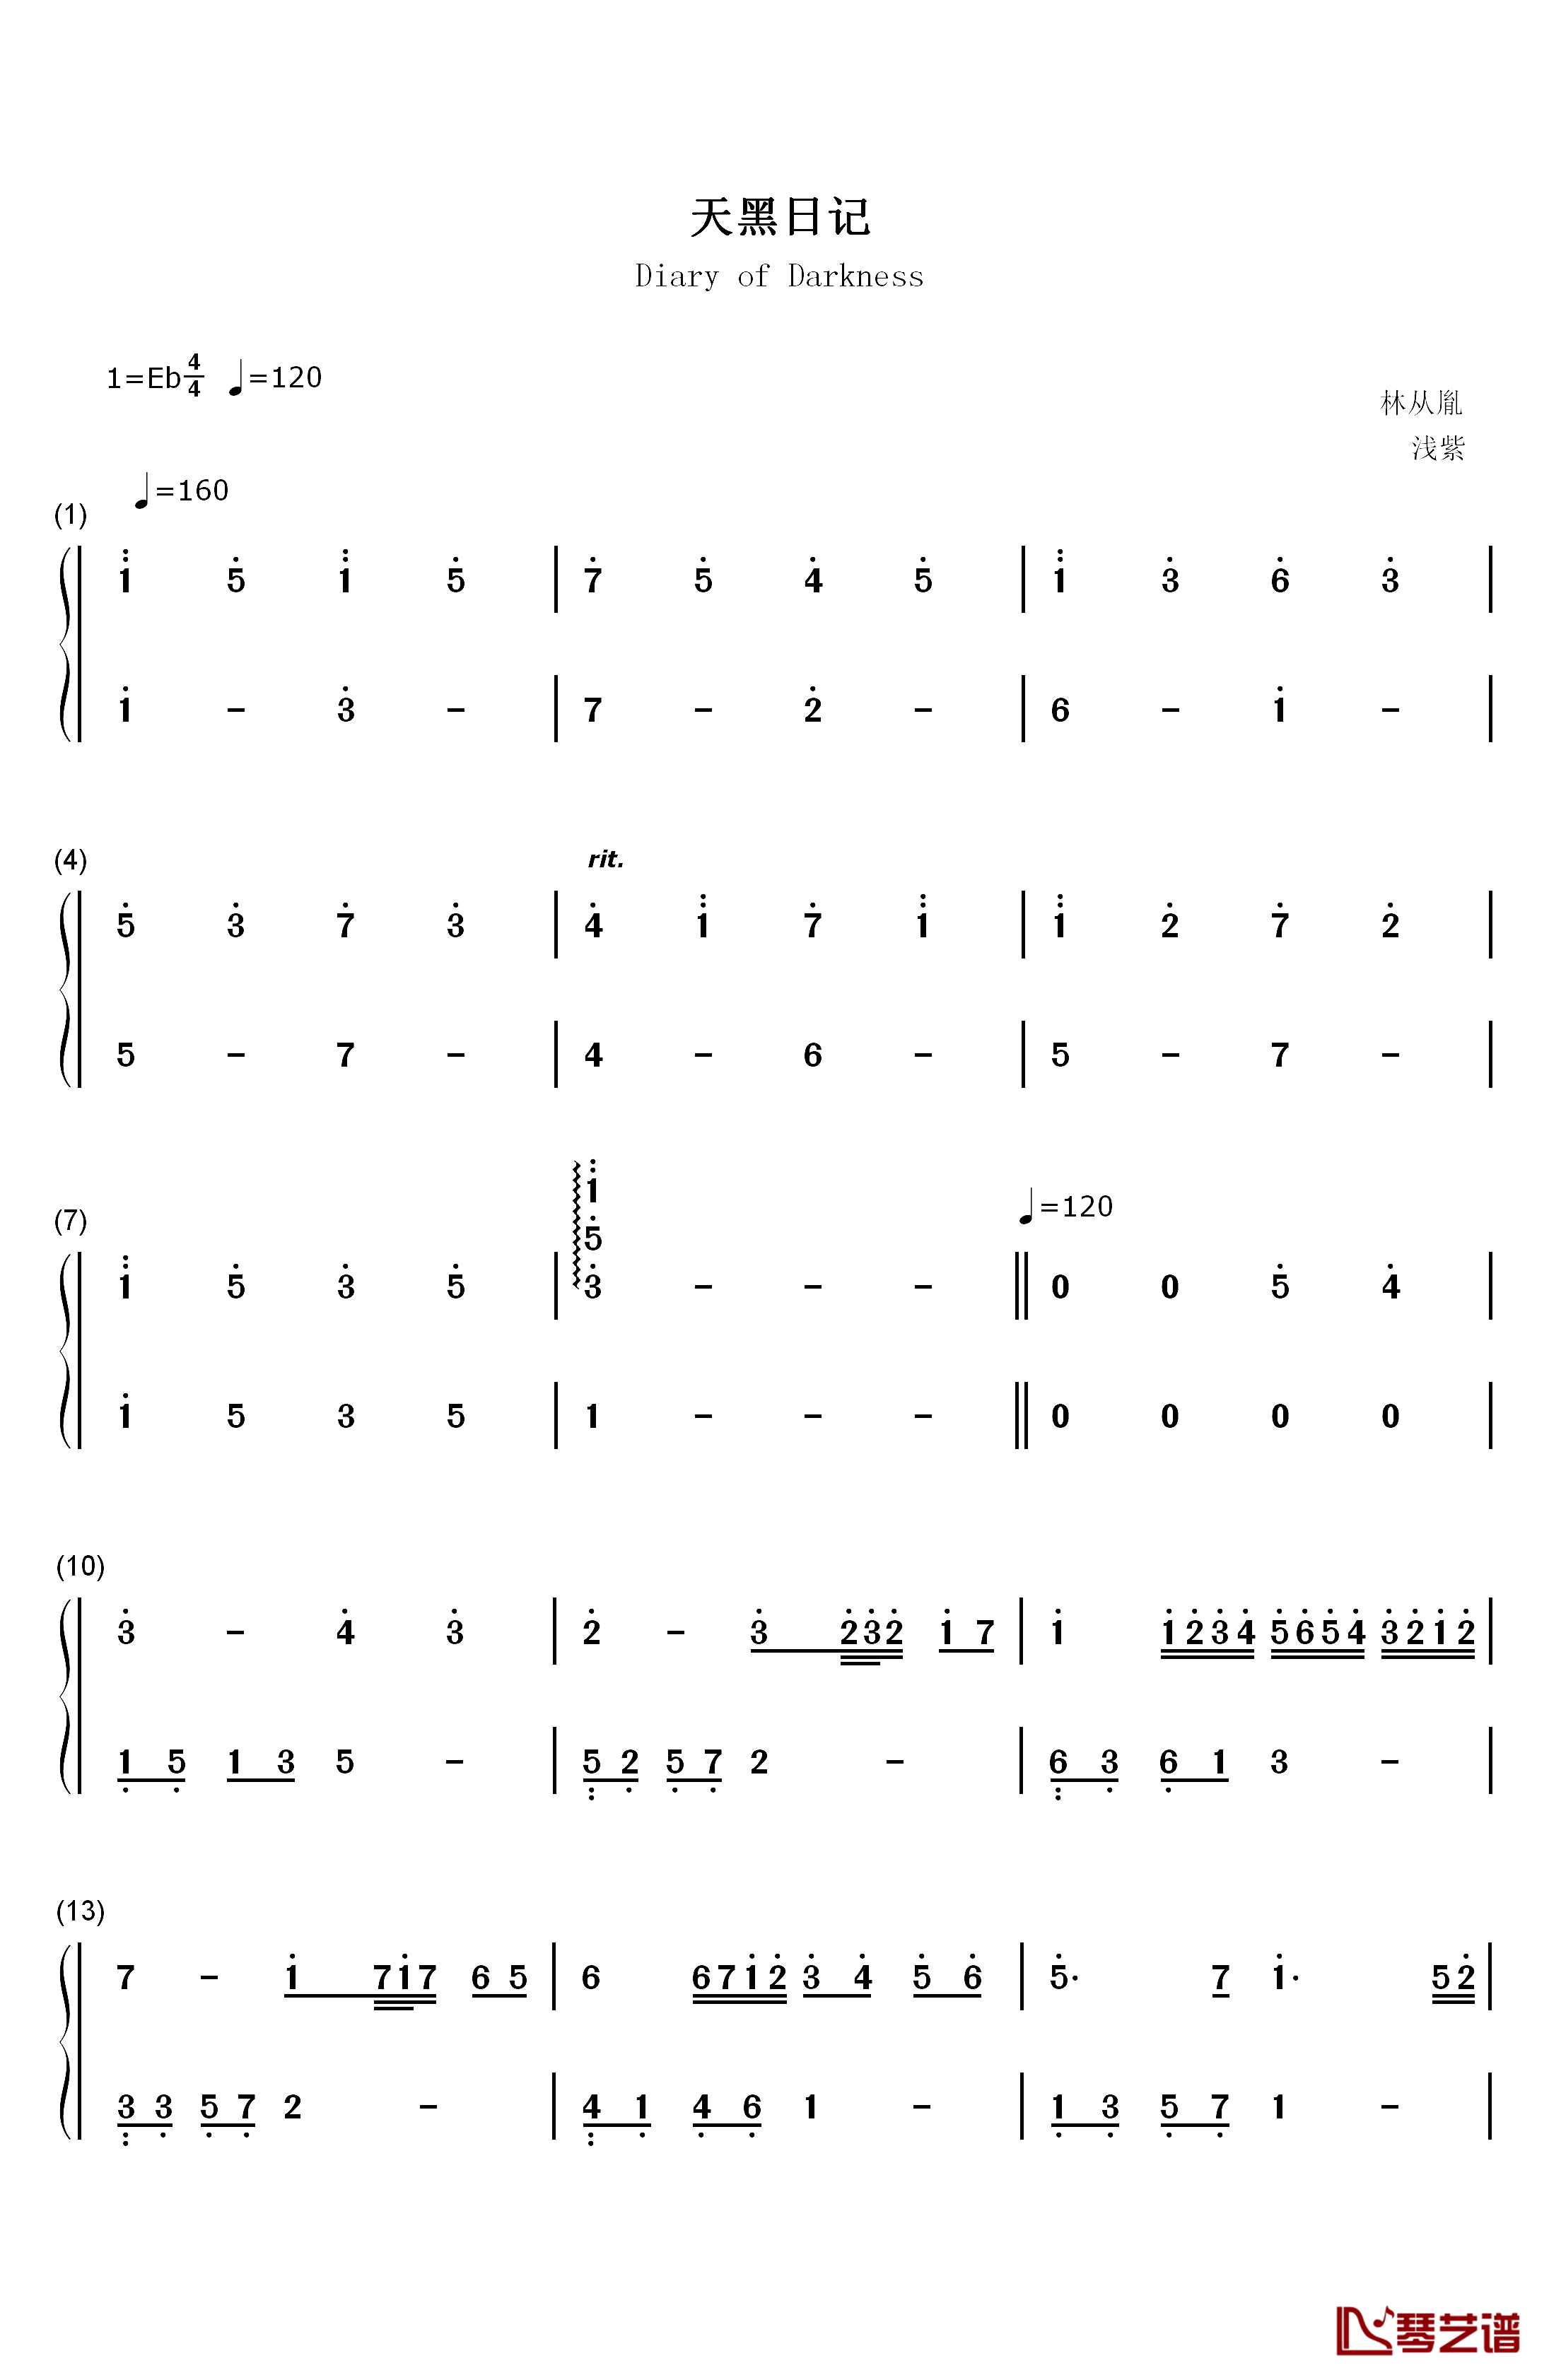 天黑日记钢琴简谱-数字双手-张语格(SNH48)1